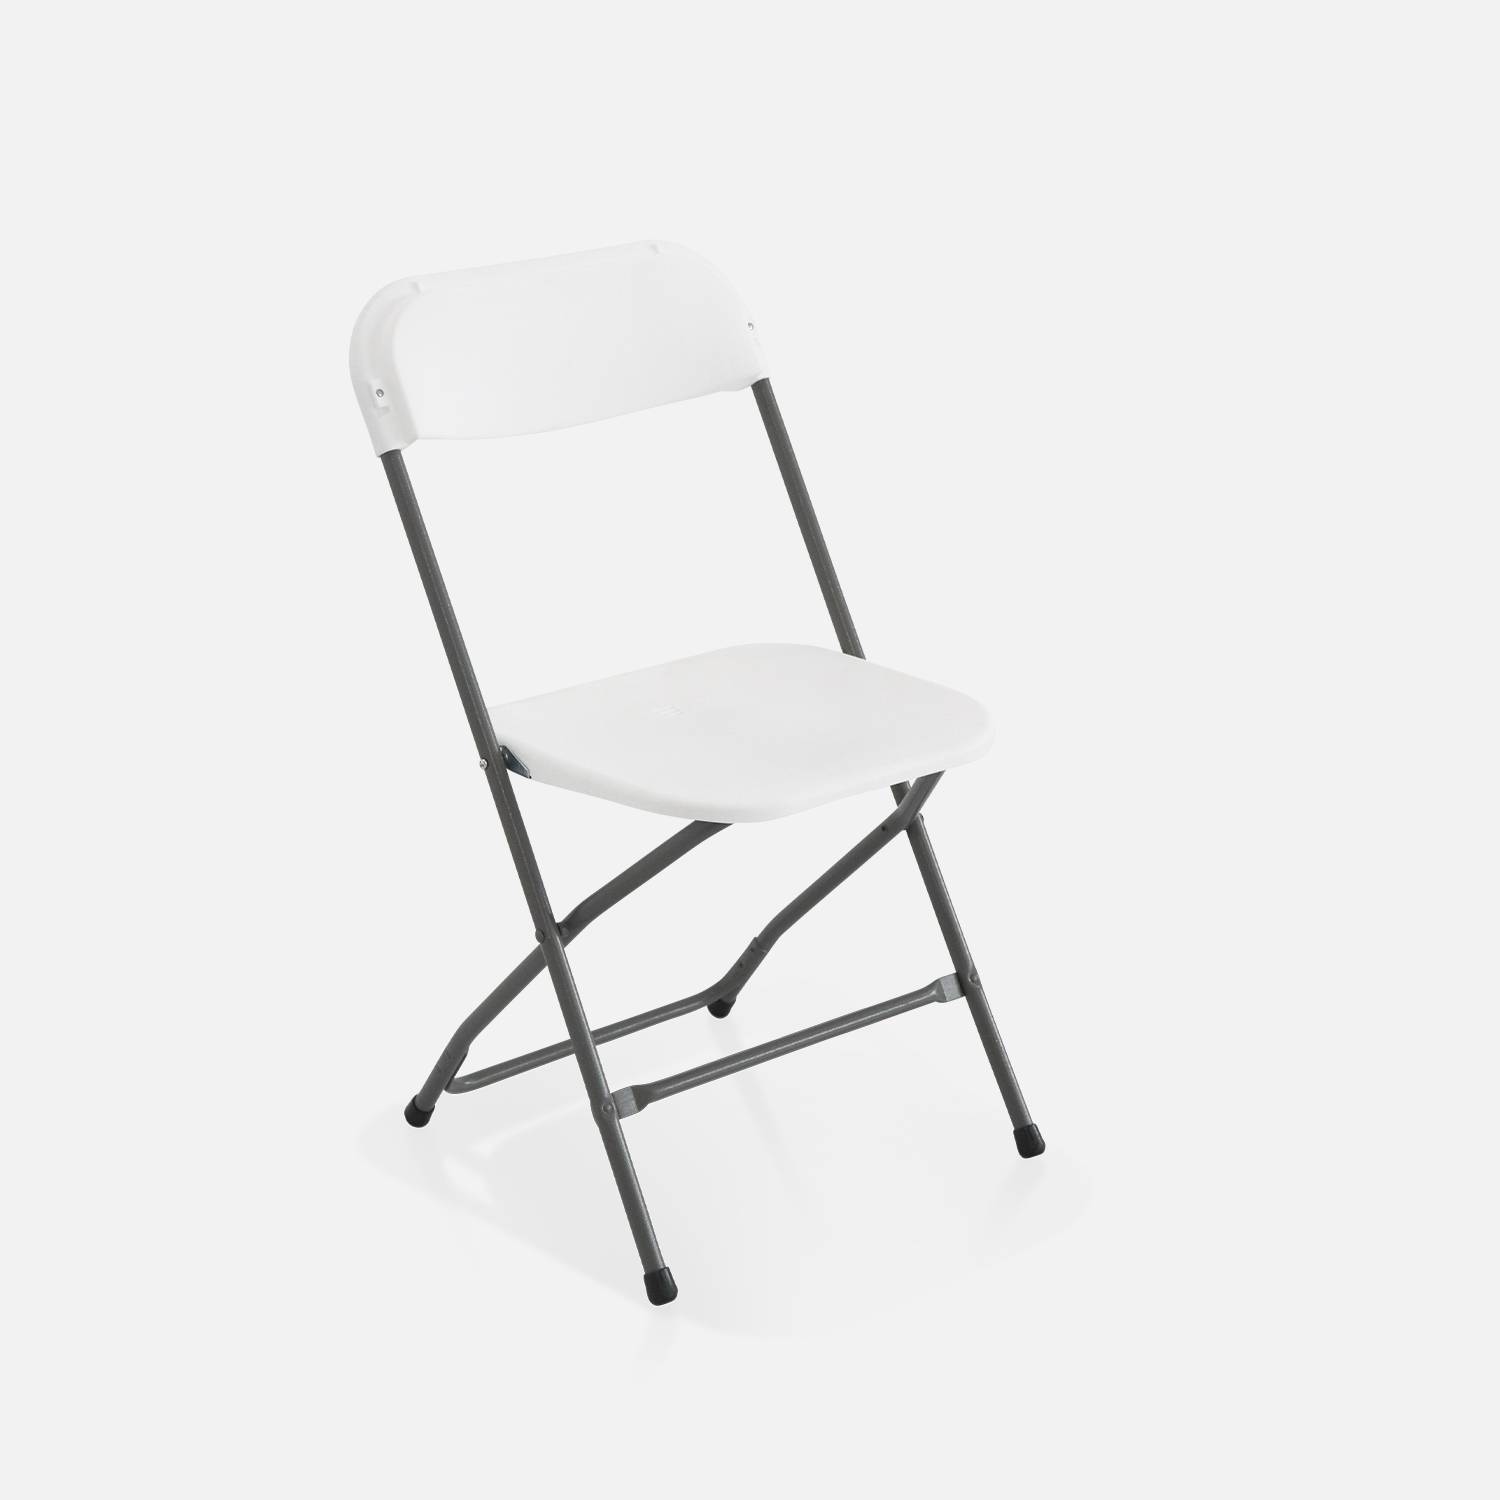  Klappbare Party-Stühle - Fiesta - 6 Stühle aus Kunststoff und Metall Photo4